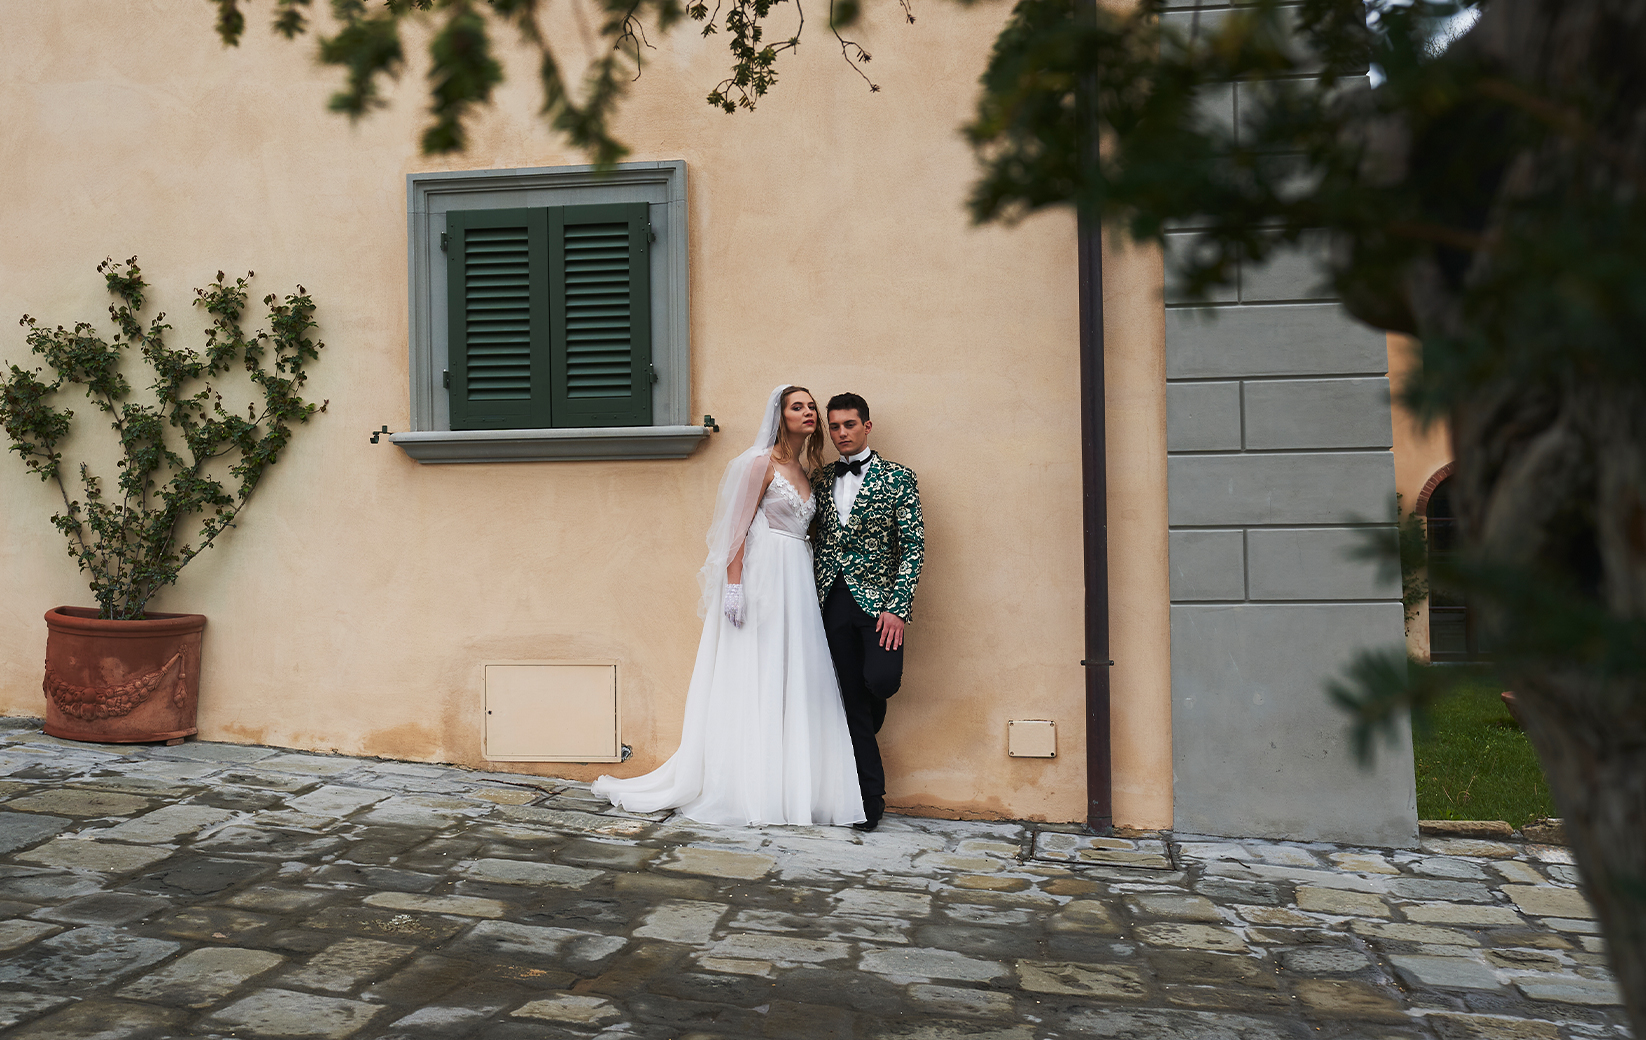 Il Giornale del Turismo - 28 febbraio, 2020 - Italy for Weddings